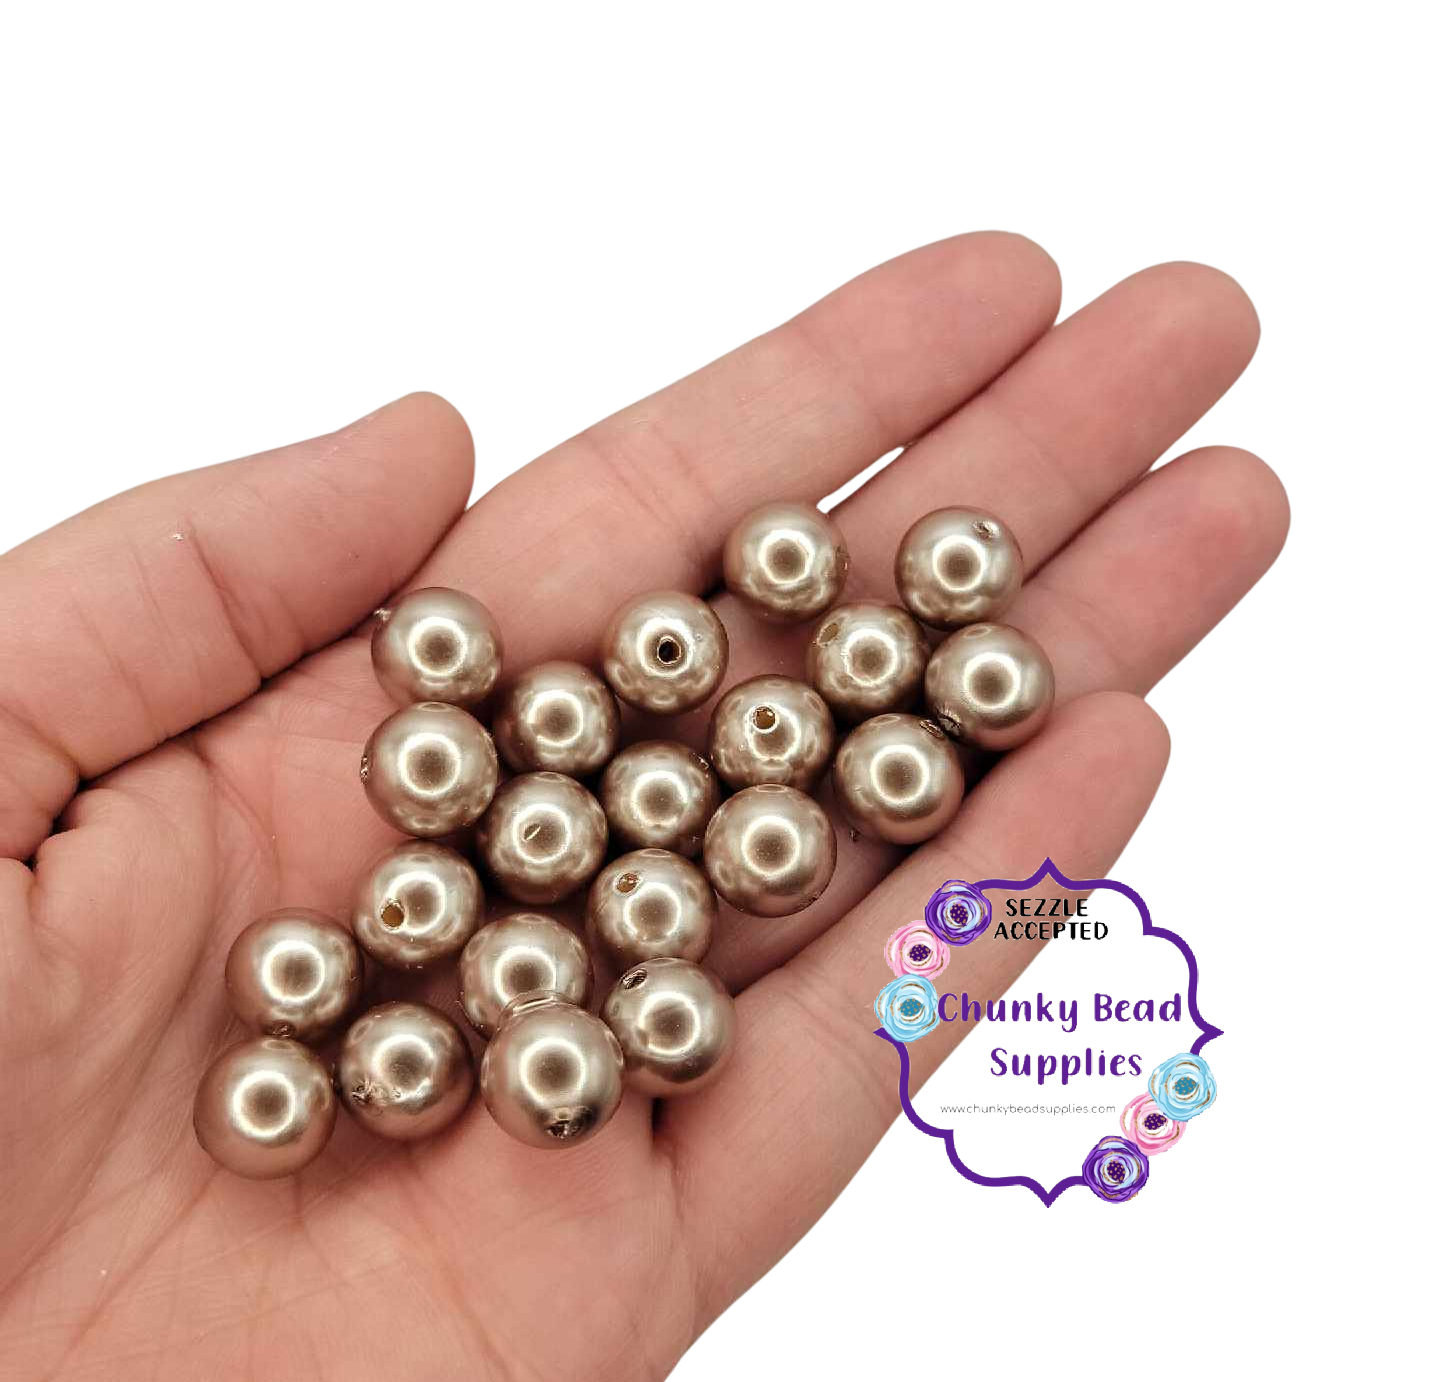 Perles acryliques « Marron cacahuète » de 12 mm